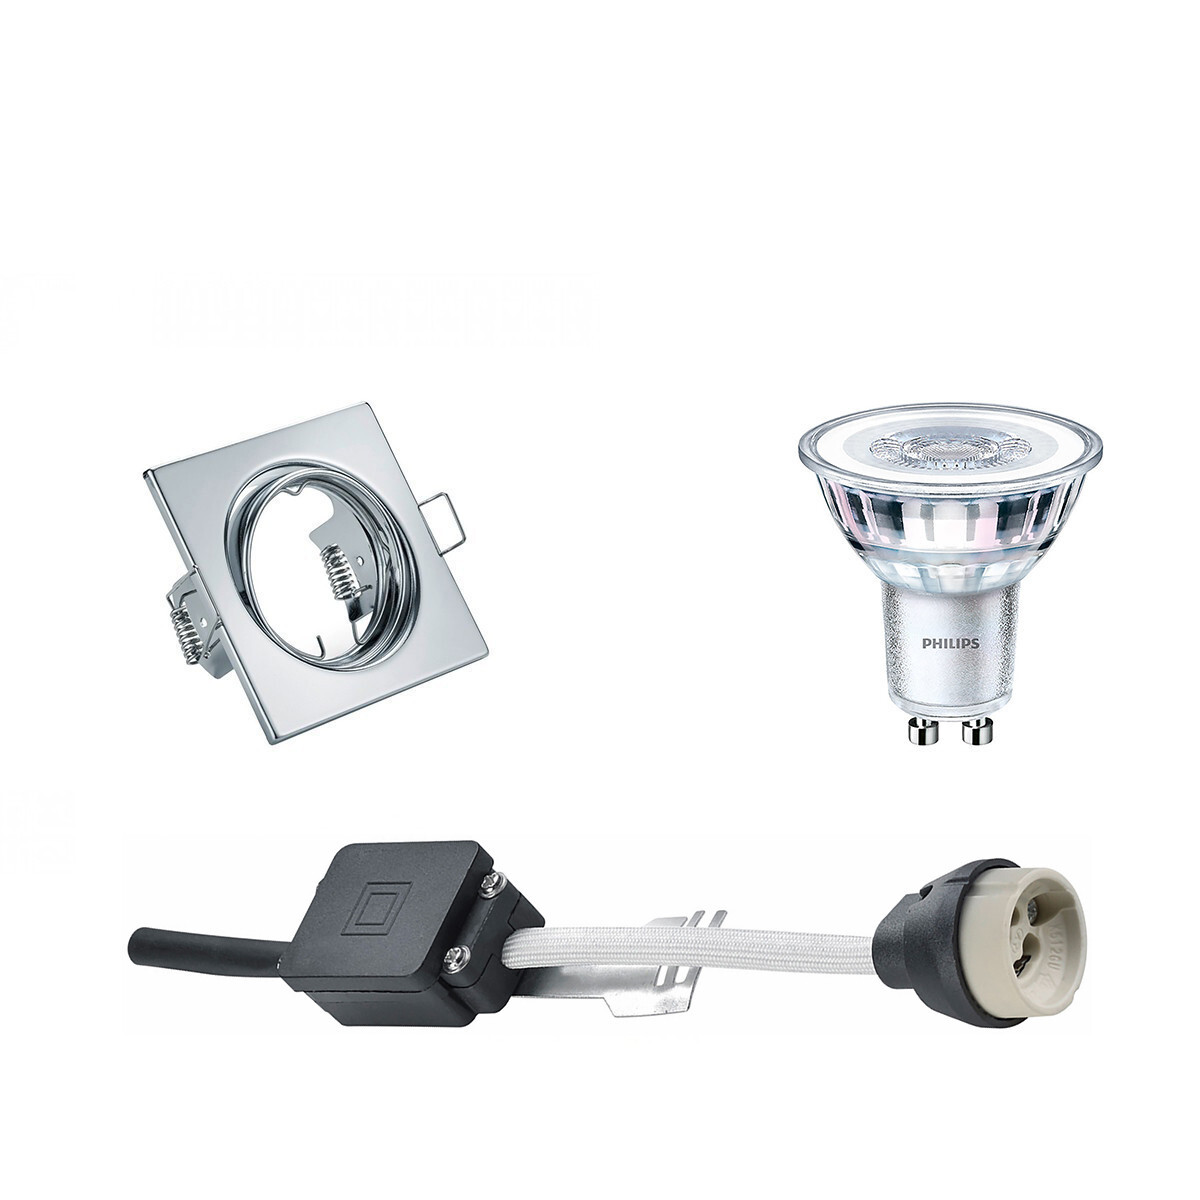 BES LED LED Spot Set - GU10 Fitting - Inbouw Vierkant - Glans Chroom - Kantelbaar 80mm - Philips - CorePro 830 36D - 4.6W - Warm Wit 3000K